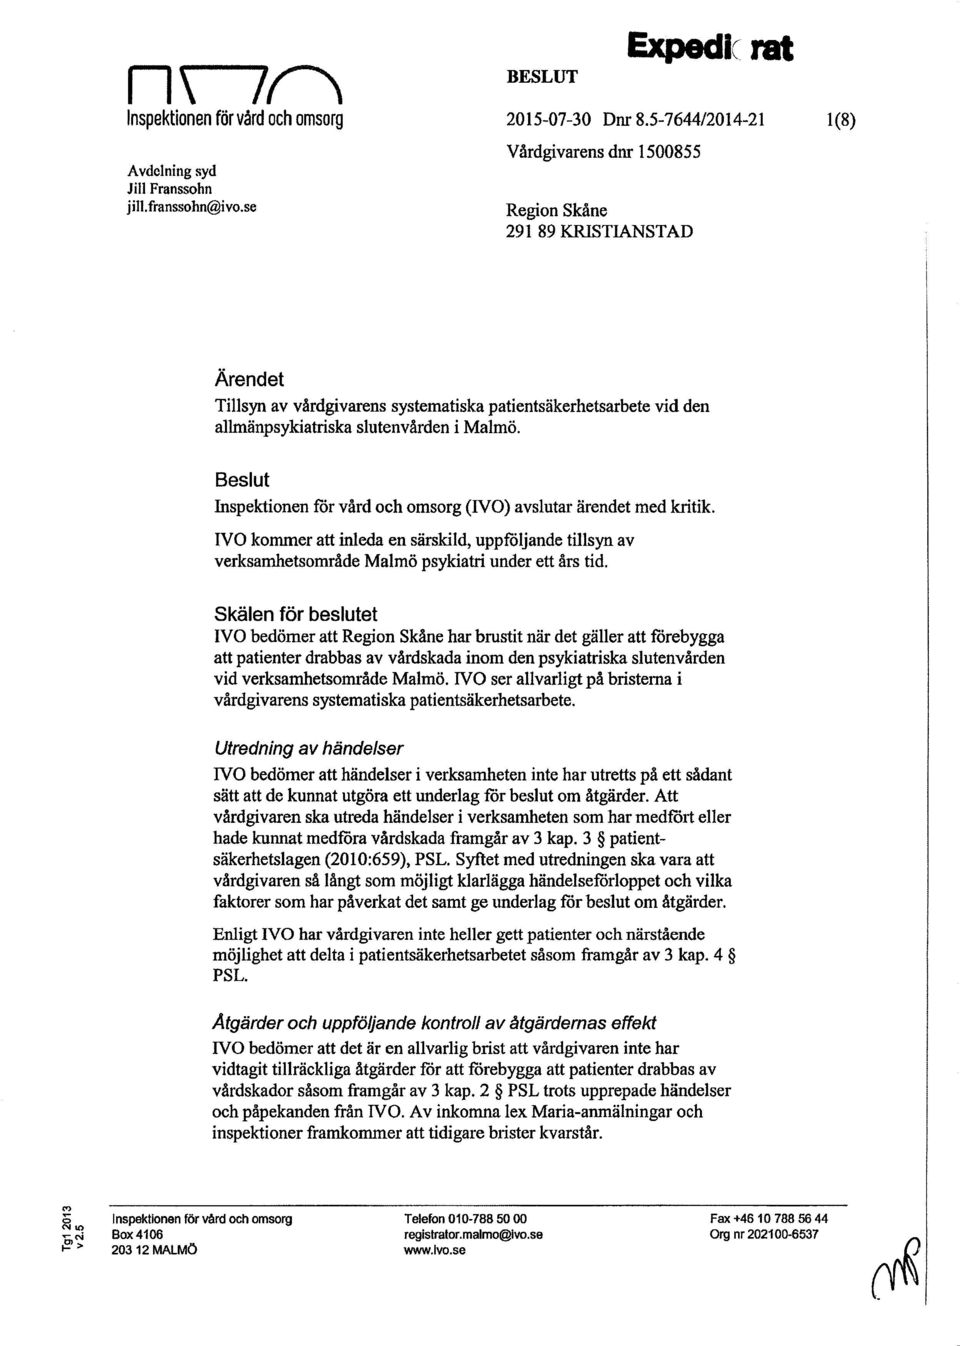 Beslut Inspektionen för värd och omsorg (IVO) avslutar ärendet med kritik. IVO kommer att inleda en särskild, uppföljande tillsyn av verksamhetsområde Malmö psykiatri under ett års tid.